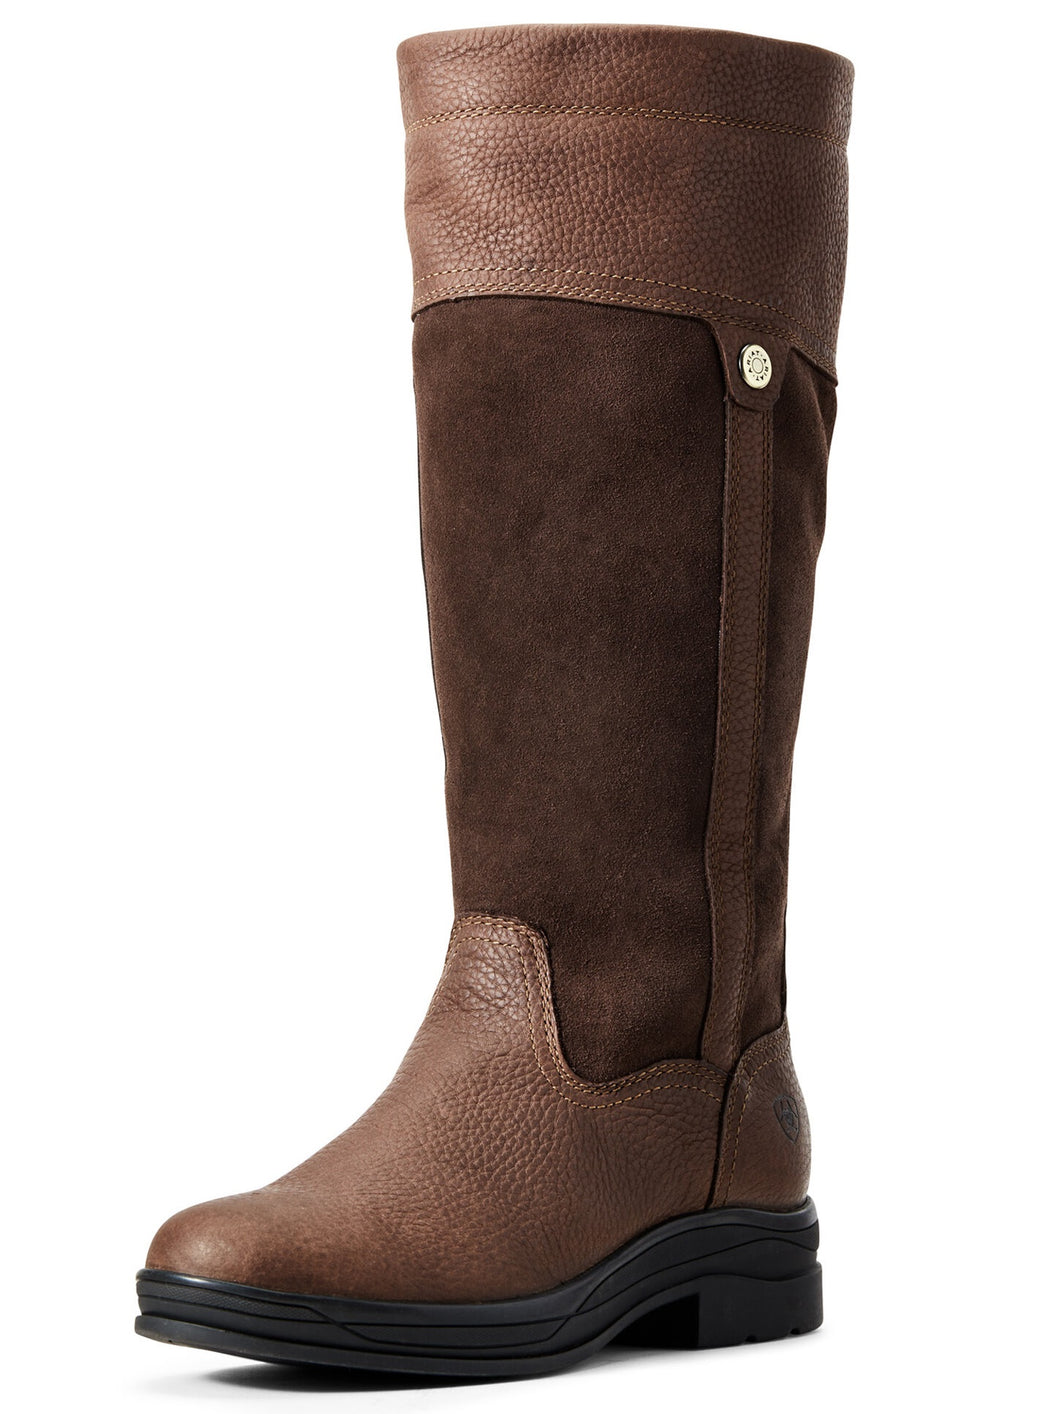 ARIAT Boots - Womens Windermere II Waterproof - Brown